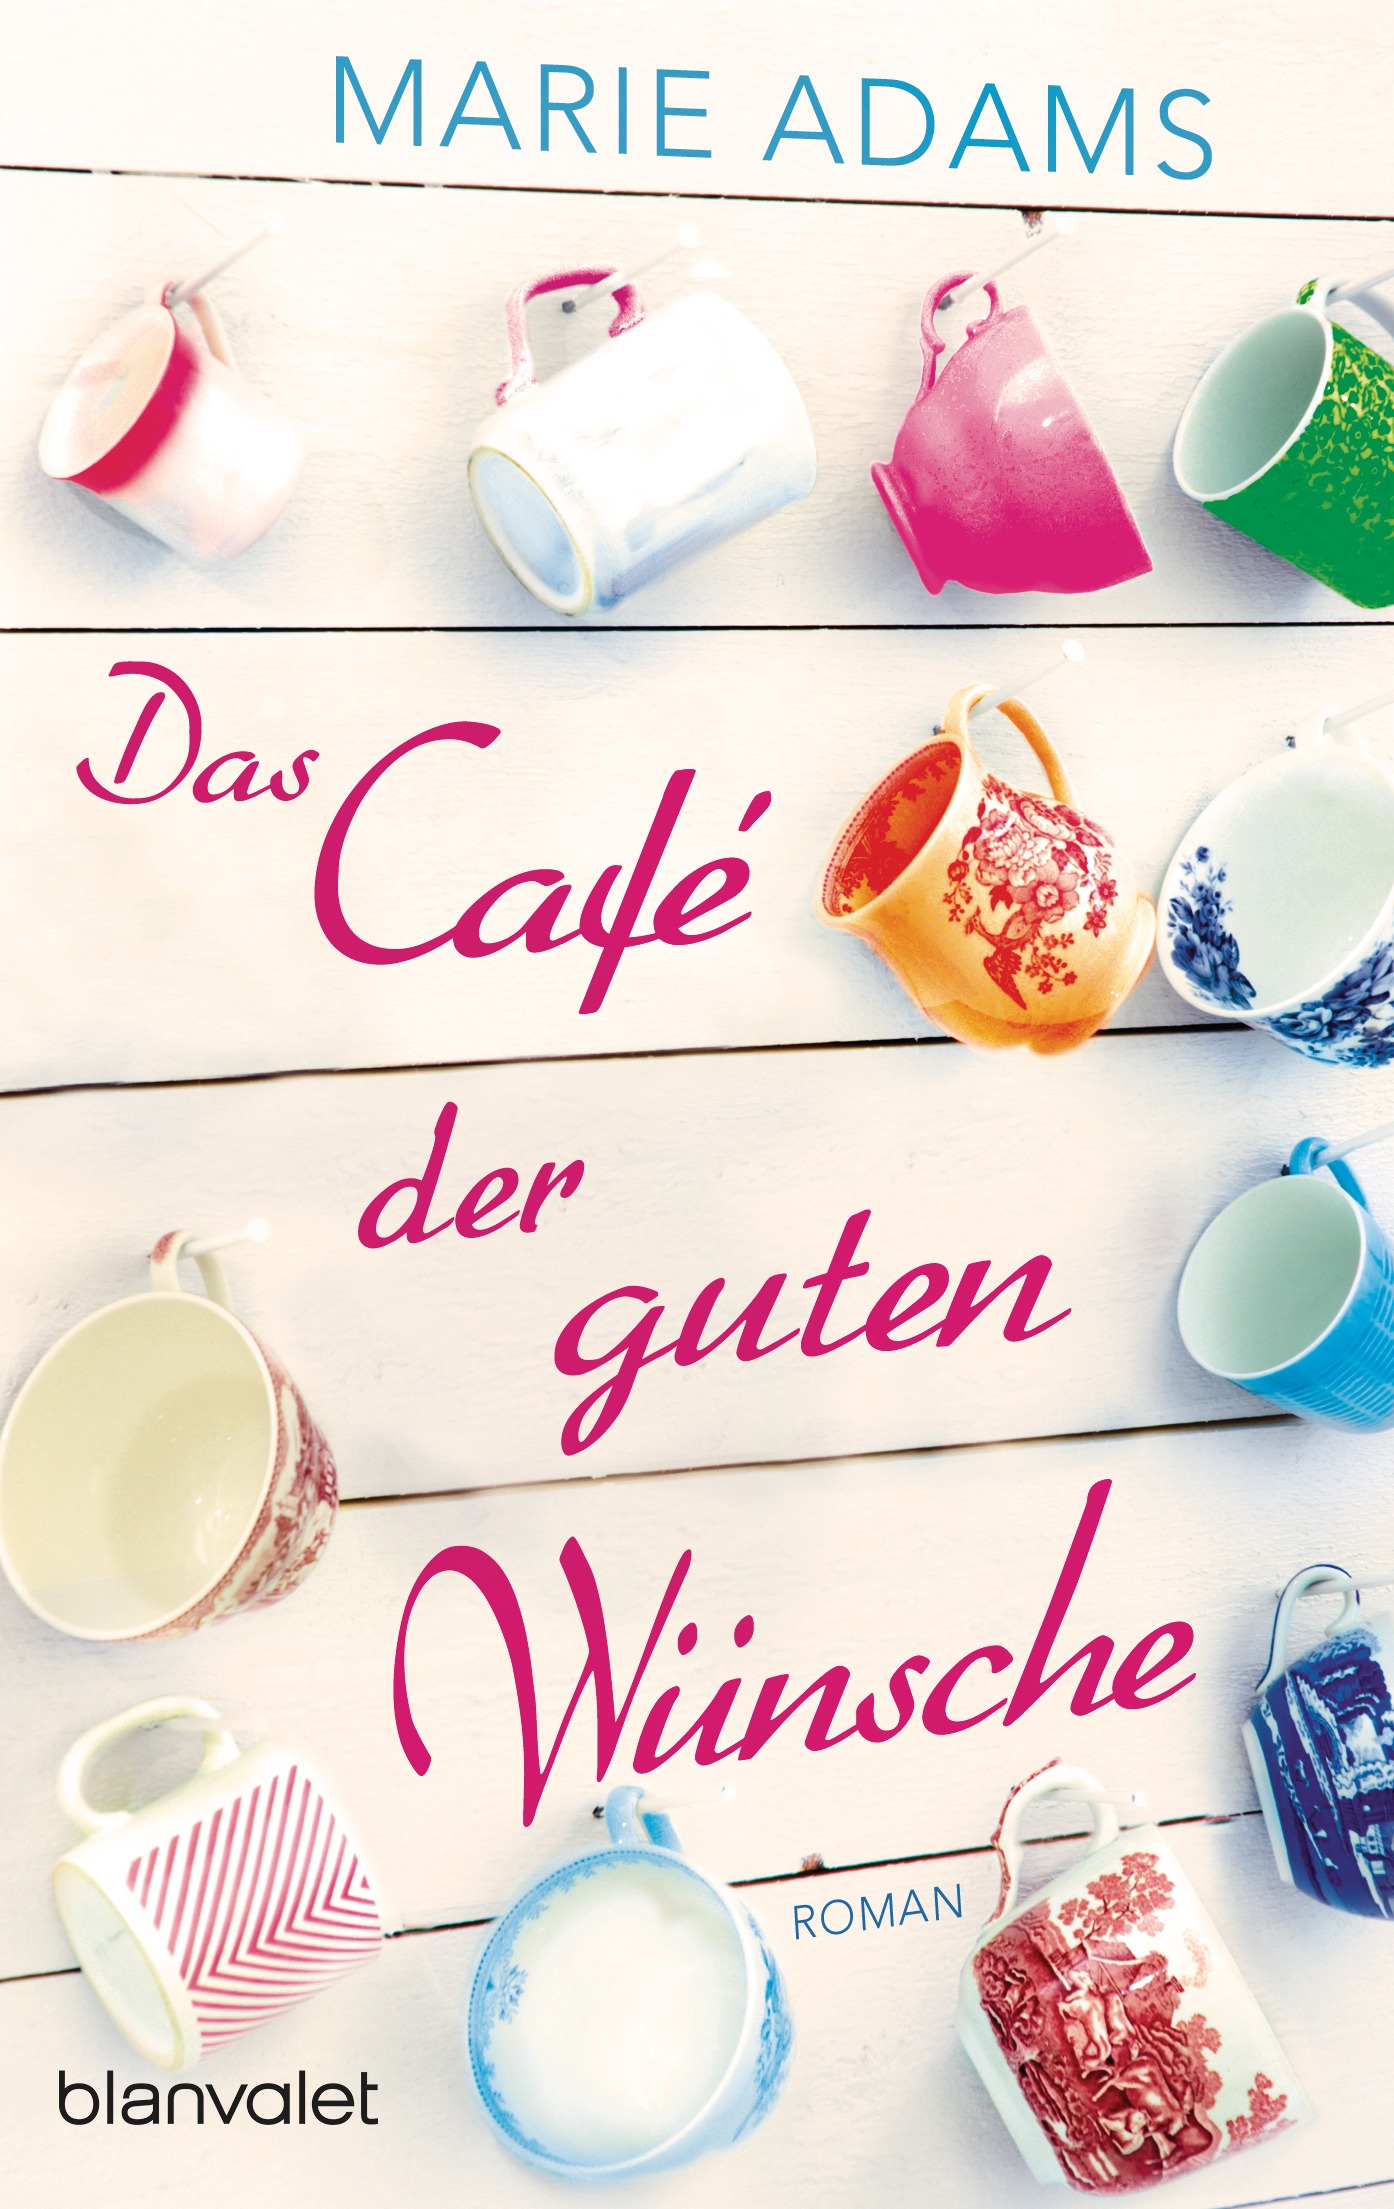 https://www.randomhouse.de/content/edition/covervoila_hires/Adams_MDas_Cafe_der_guten_Wuensche_164111.jpg